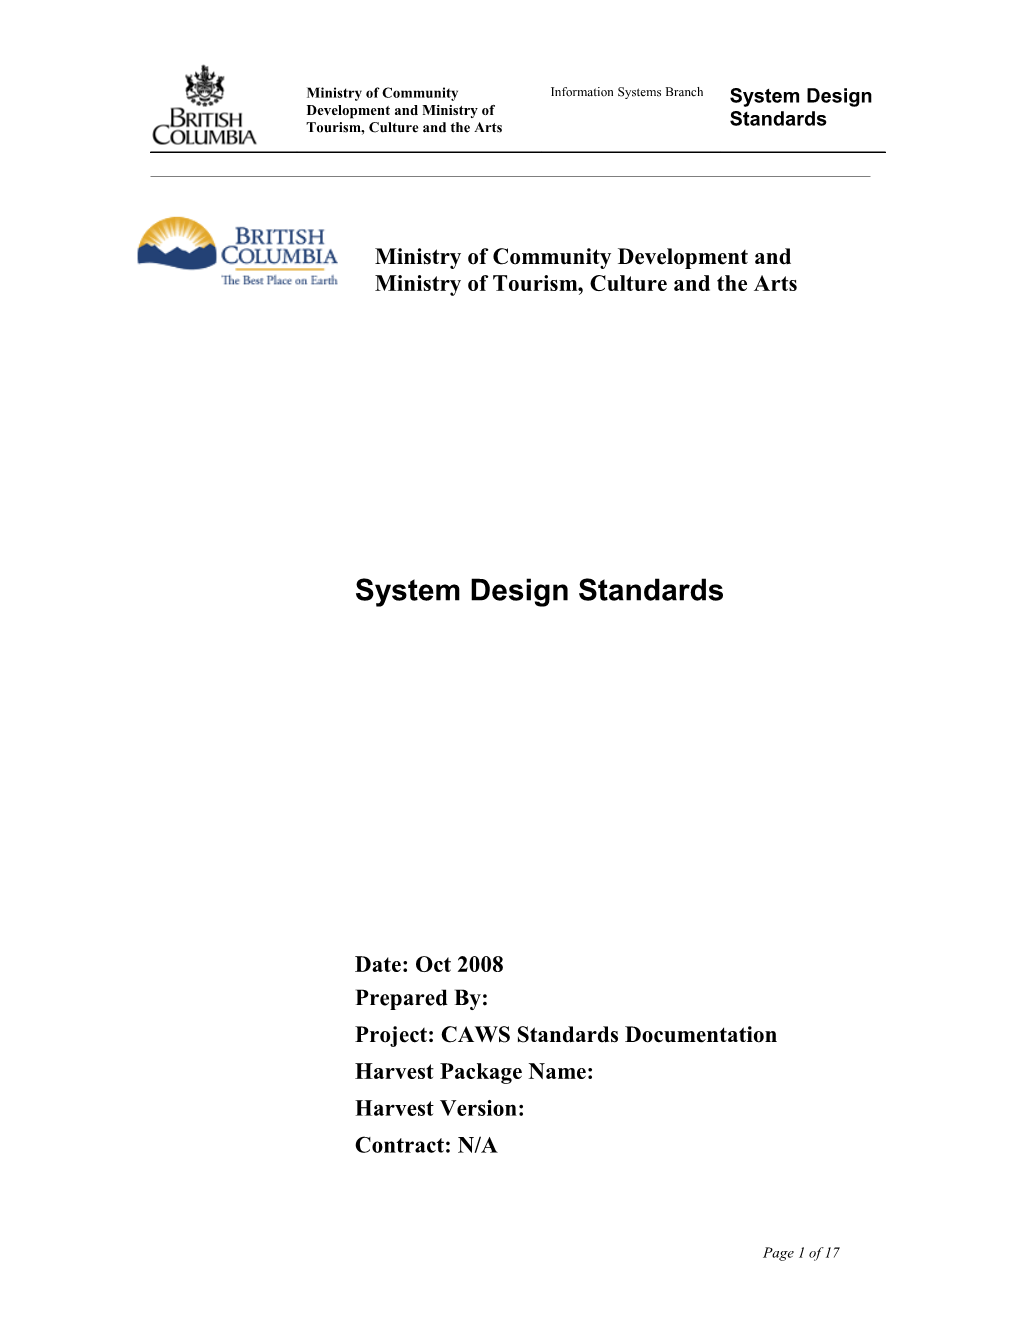 System Design Standards